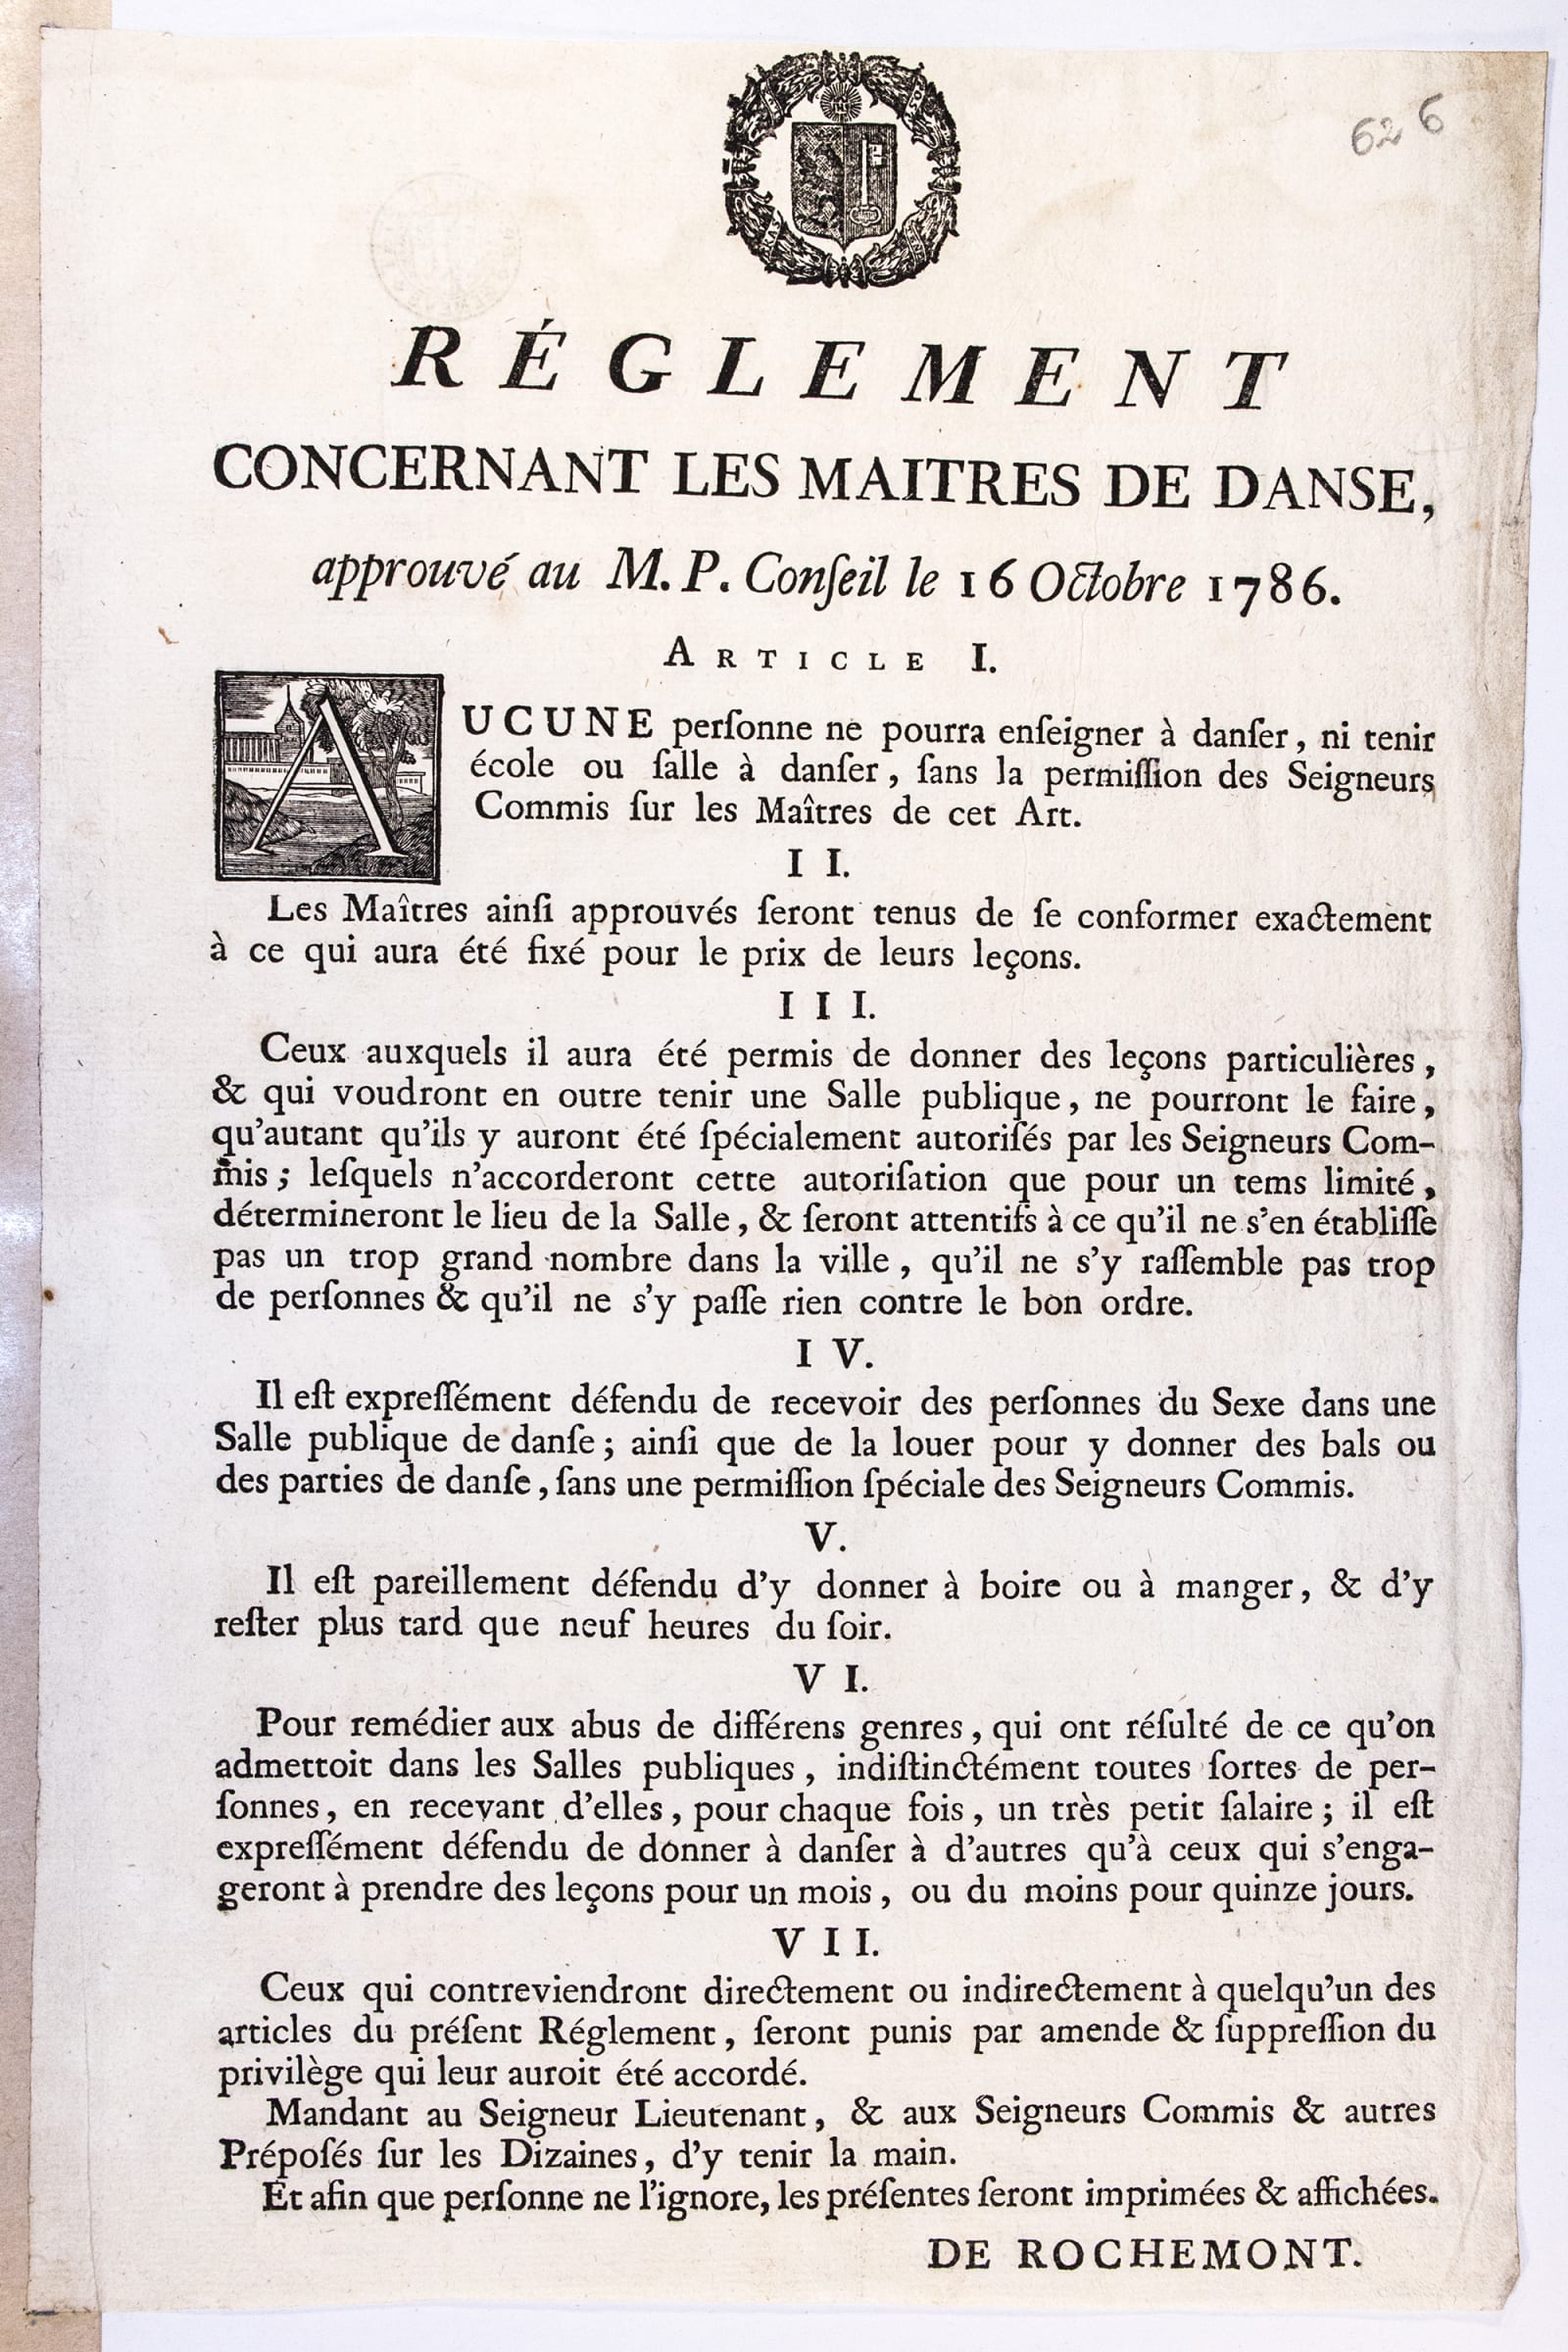 Réglement concernant les maîtres de danse,1786 © Droits réservés, Archives d’État de Genève. Cote : Placards et imprimés officiels, portefeuille 6, n° 626